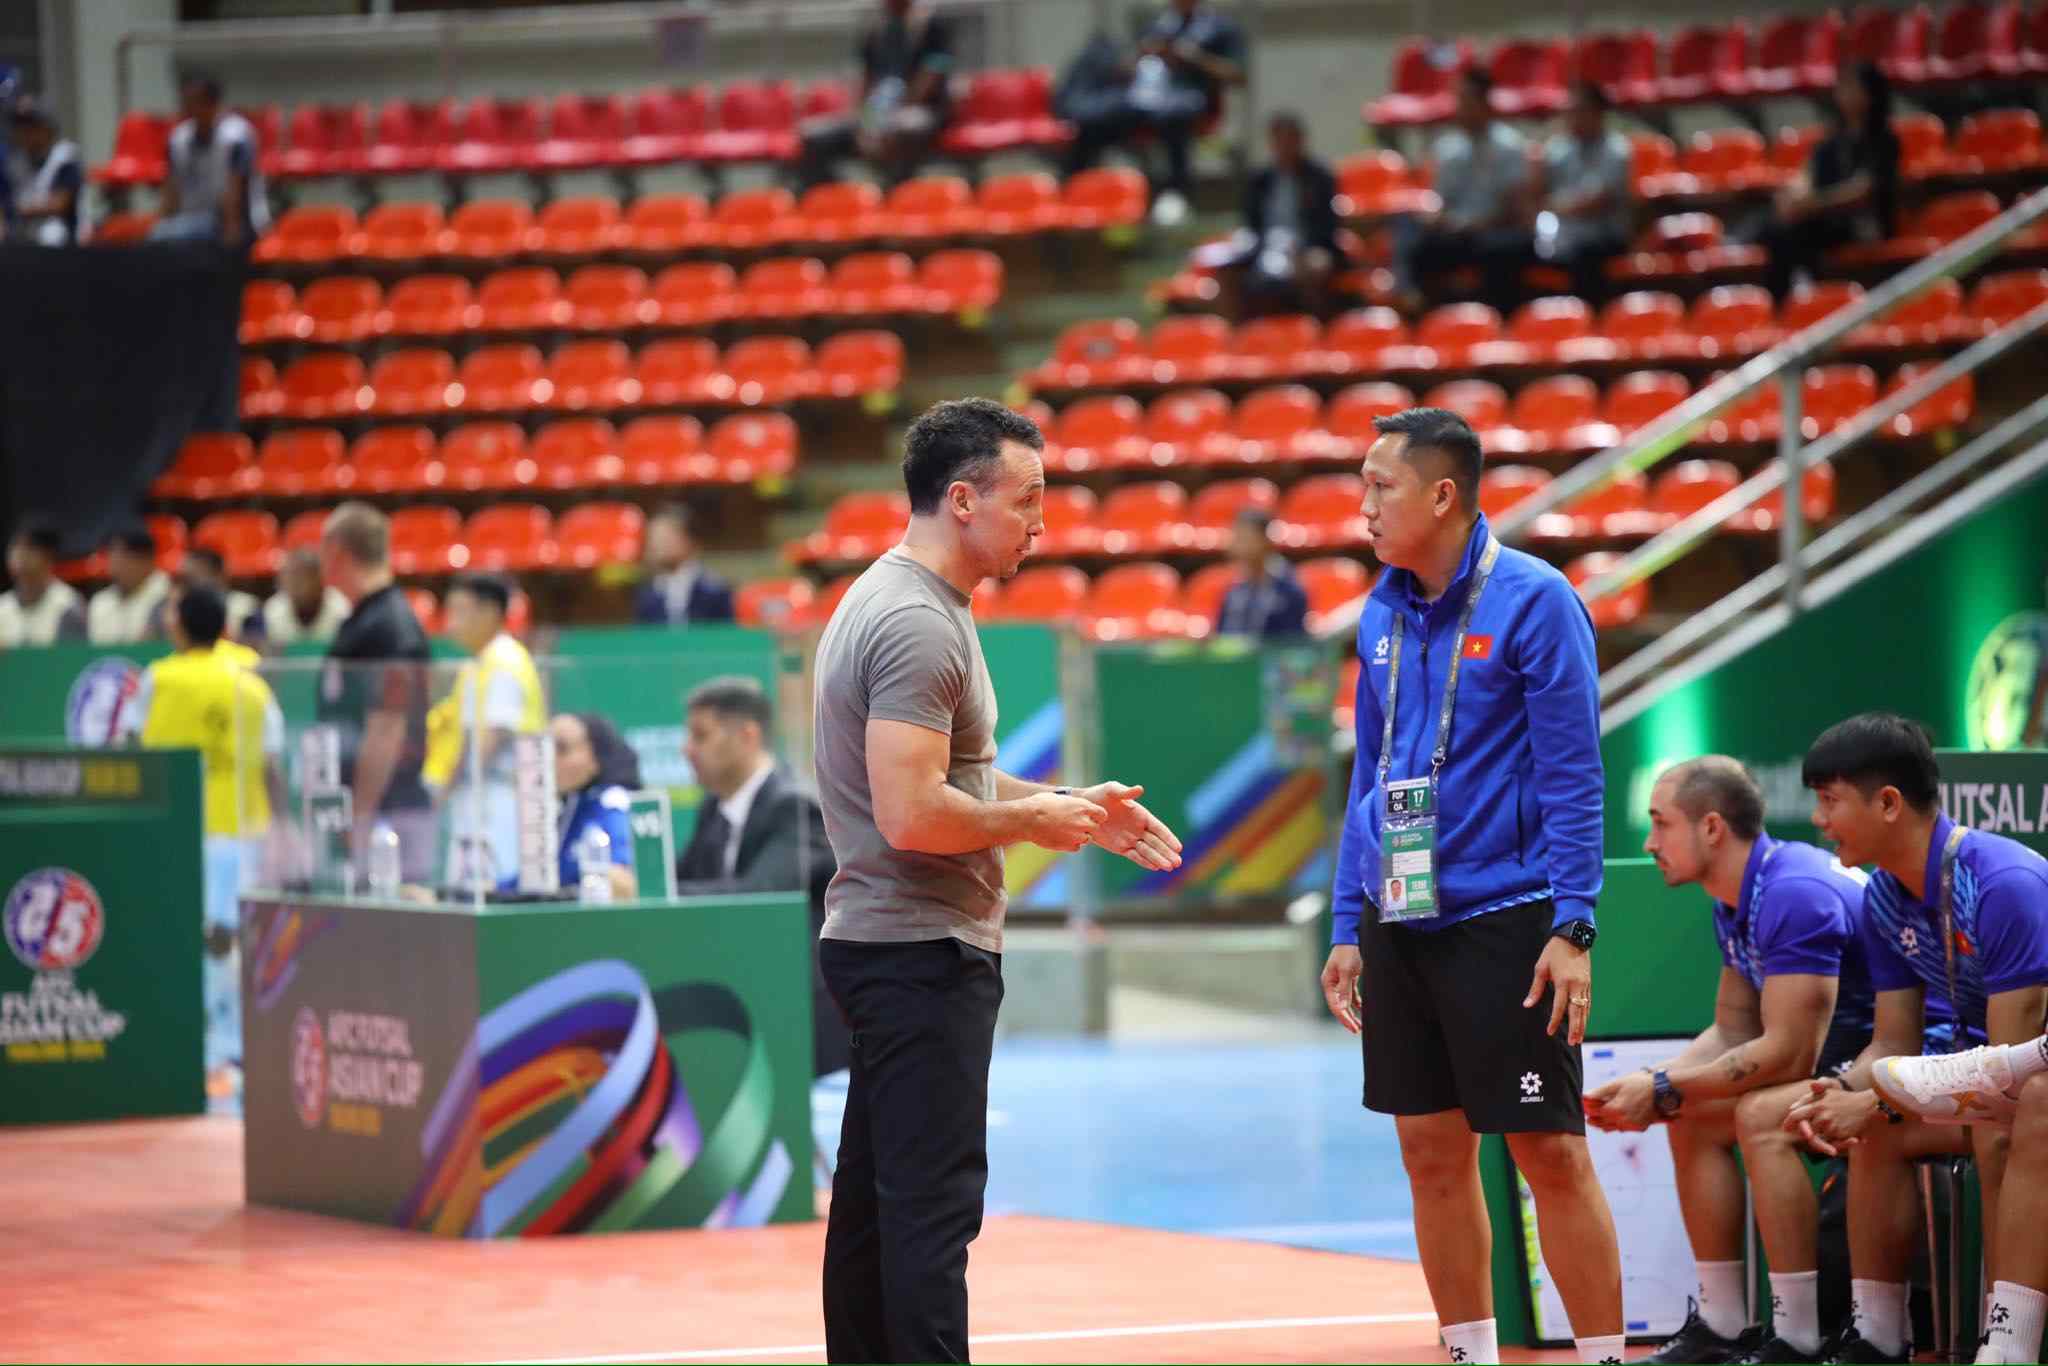 Huấn luyện viên Diego Giustozzi sẽ cần hơn nữa những toan tính cho tuyển futsal Việt Nam ở 2 trận đấu còn lại của bảng A với Trung Quốc và Thái Lan. Ảnh: VFF